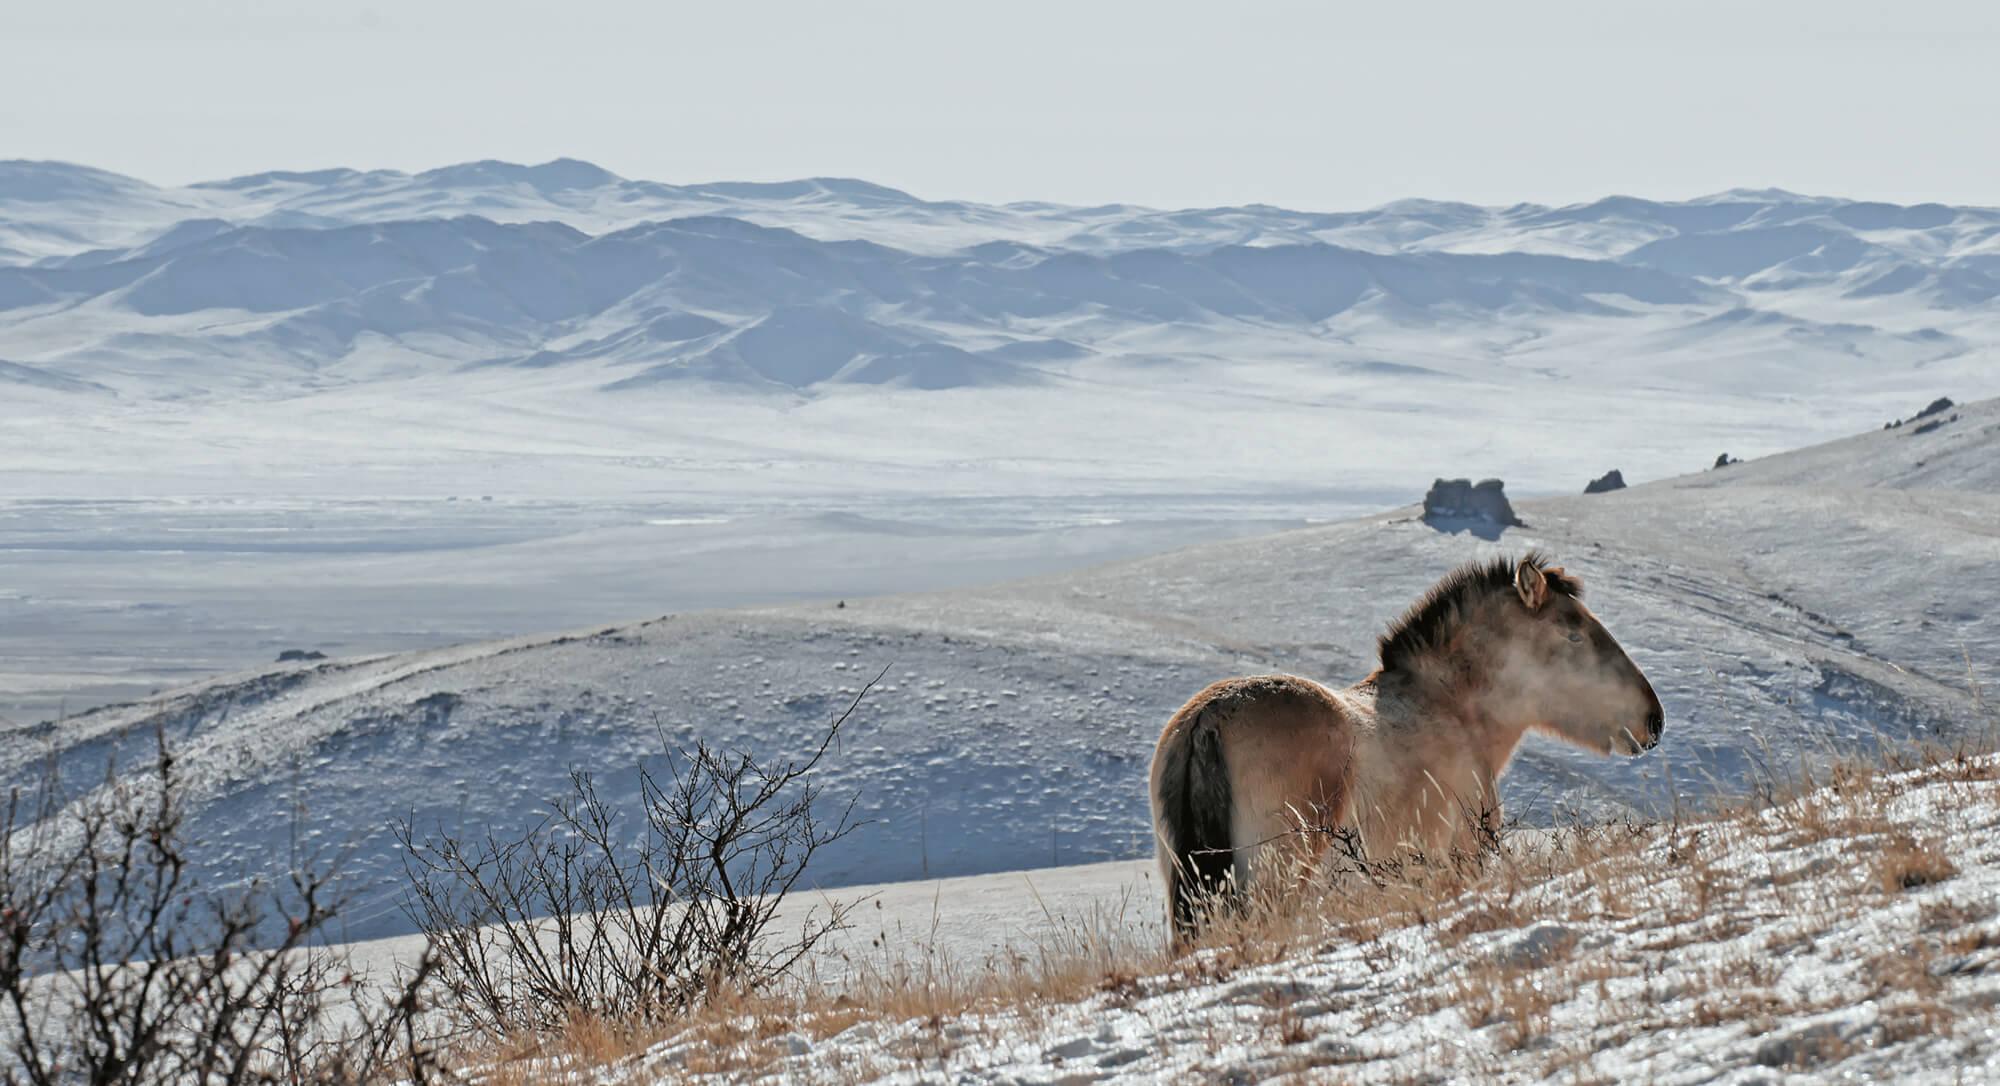 يقف حصان برجفالسكي مطلًا على وادي محاط بقمم مغطاة بالثلوج في منتزه هوستاي الوطني.  المصور: أستريد هاريسون    المكان: منغوليا